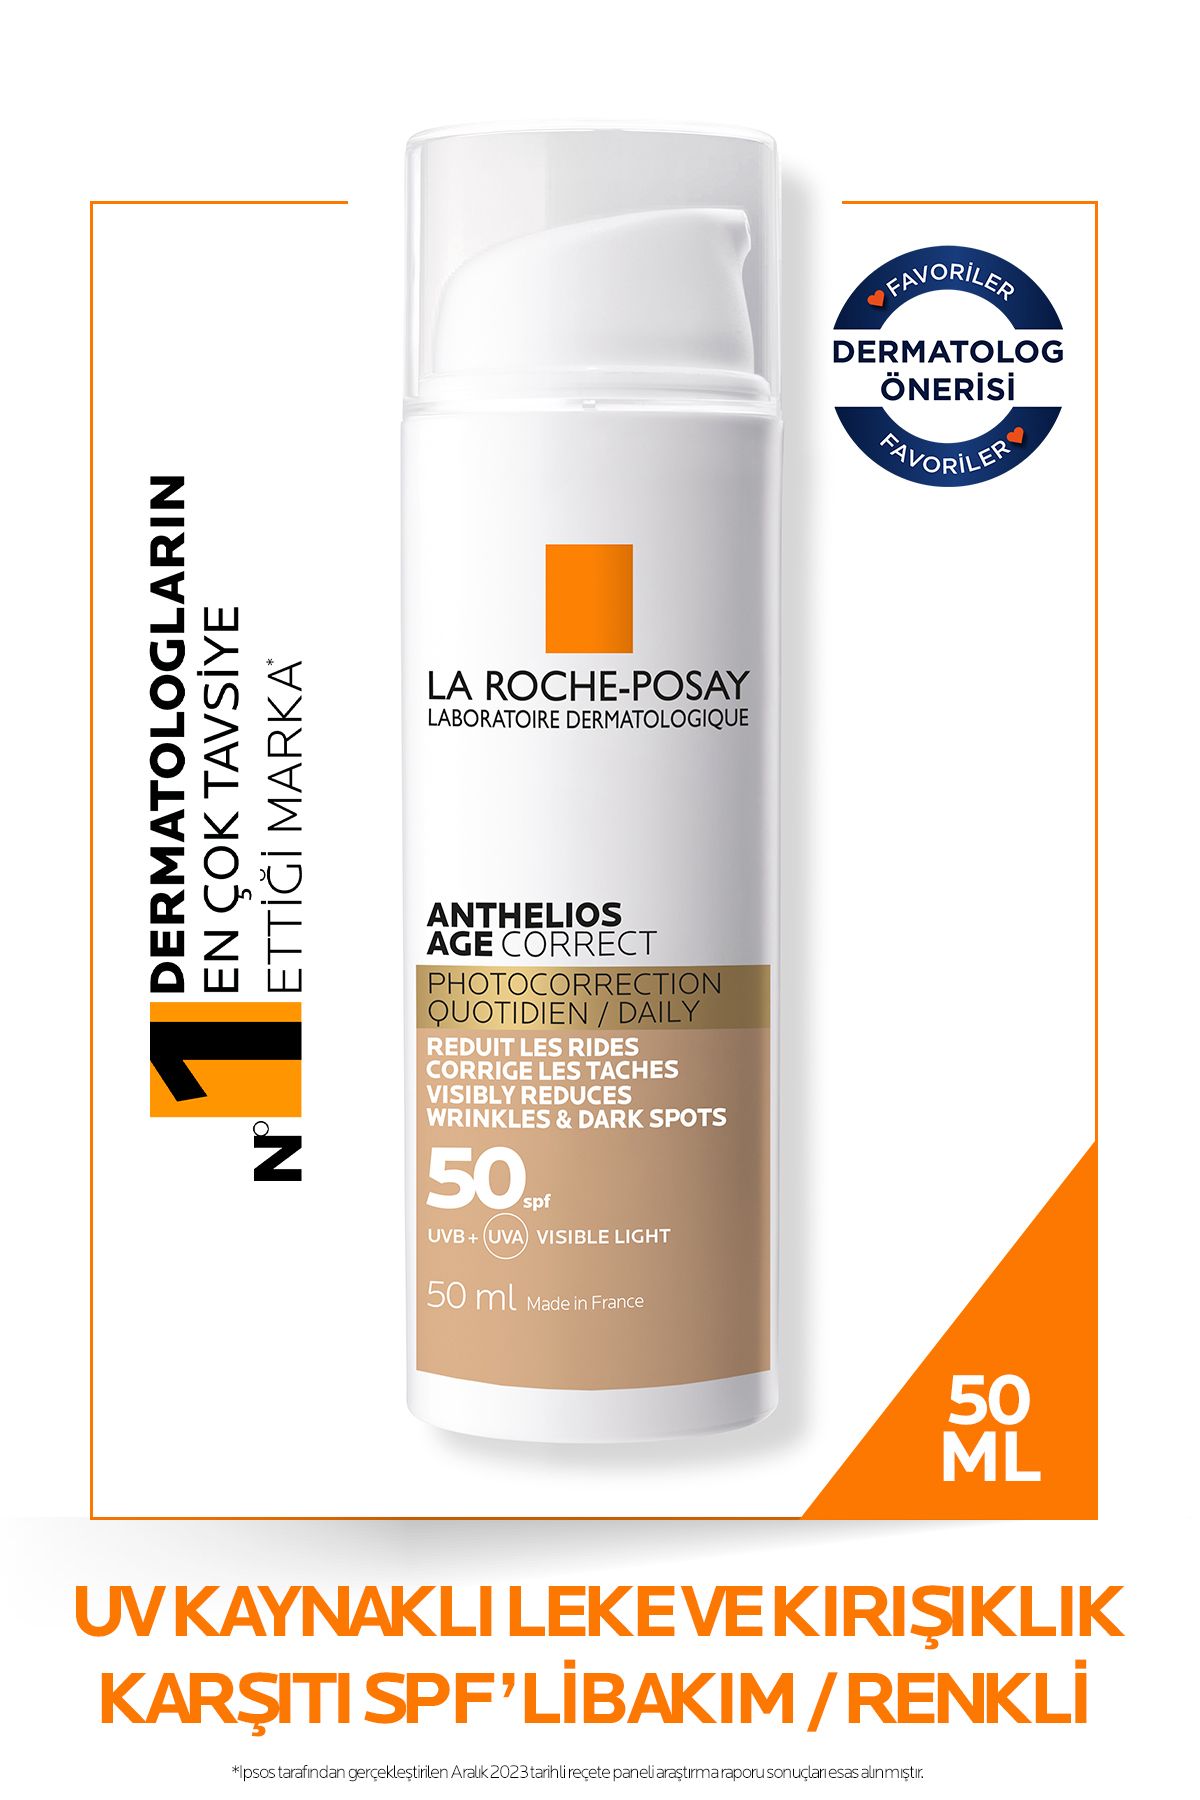 La Roche Posay Anthelios Age Correct Spf50+ Leke ve Kırışıklık Karşıtı Renkli Yüz Güneş Kremi 50 ml